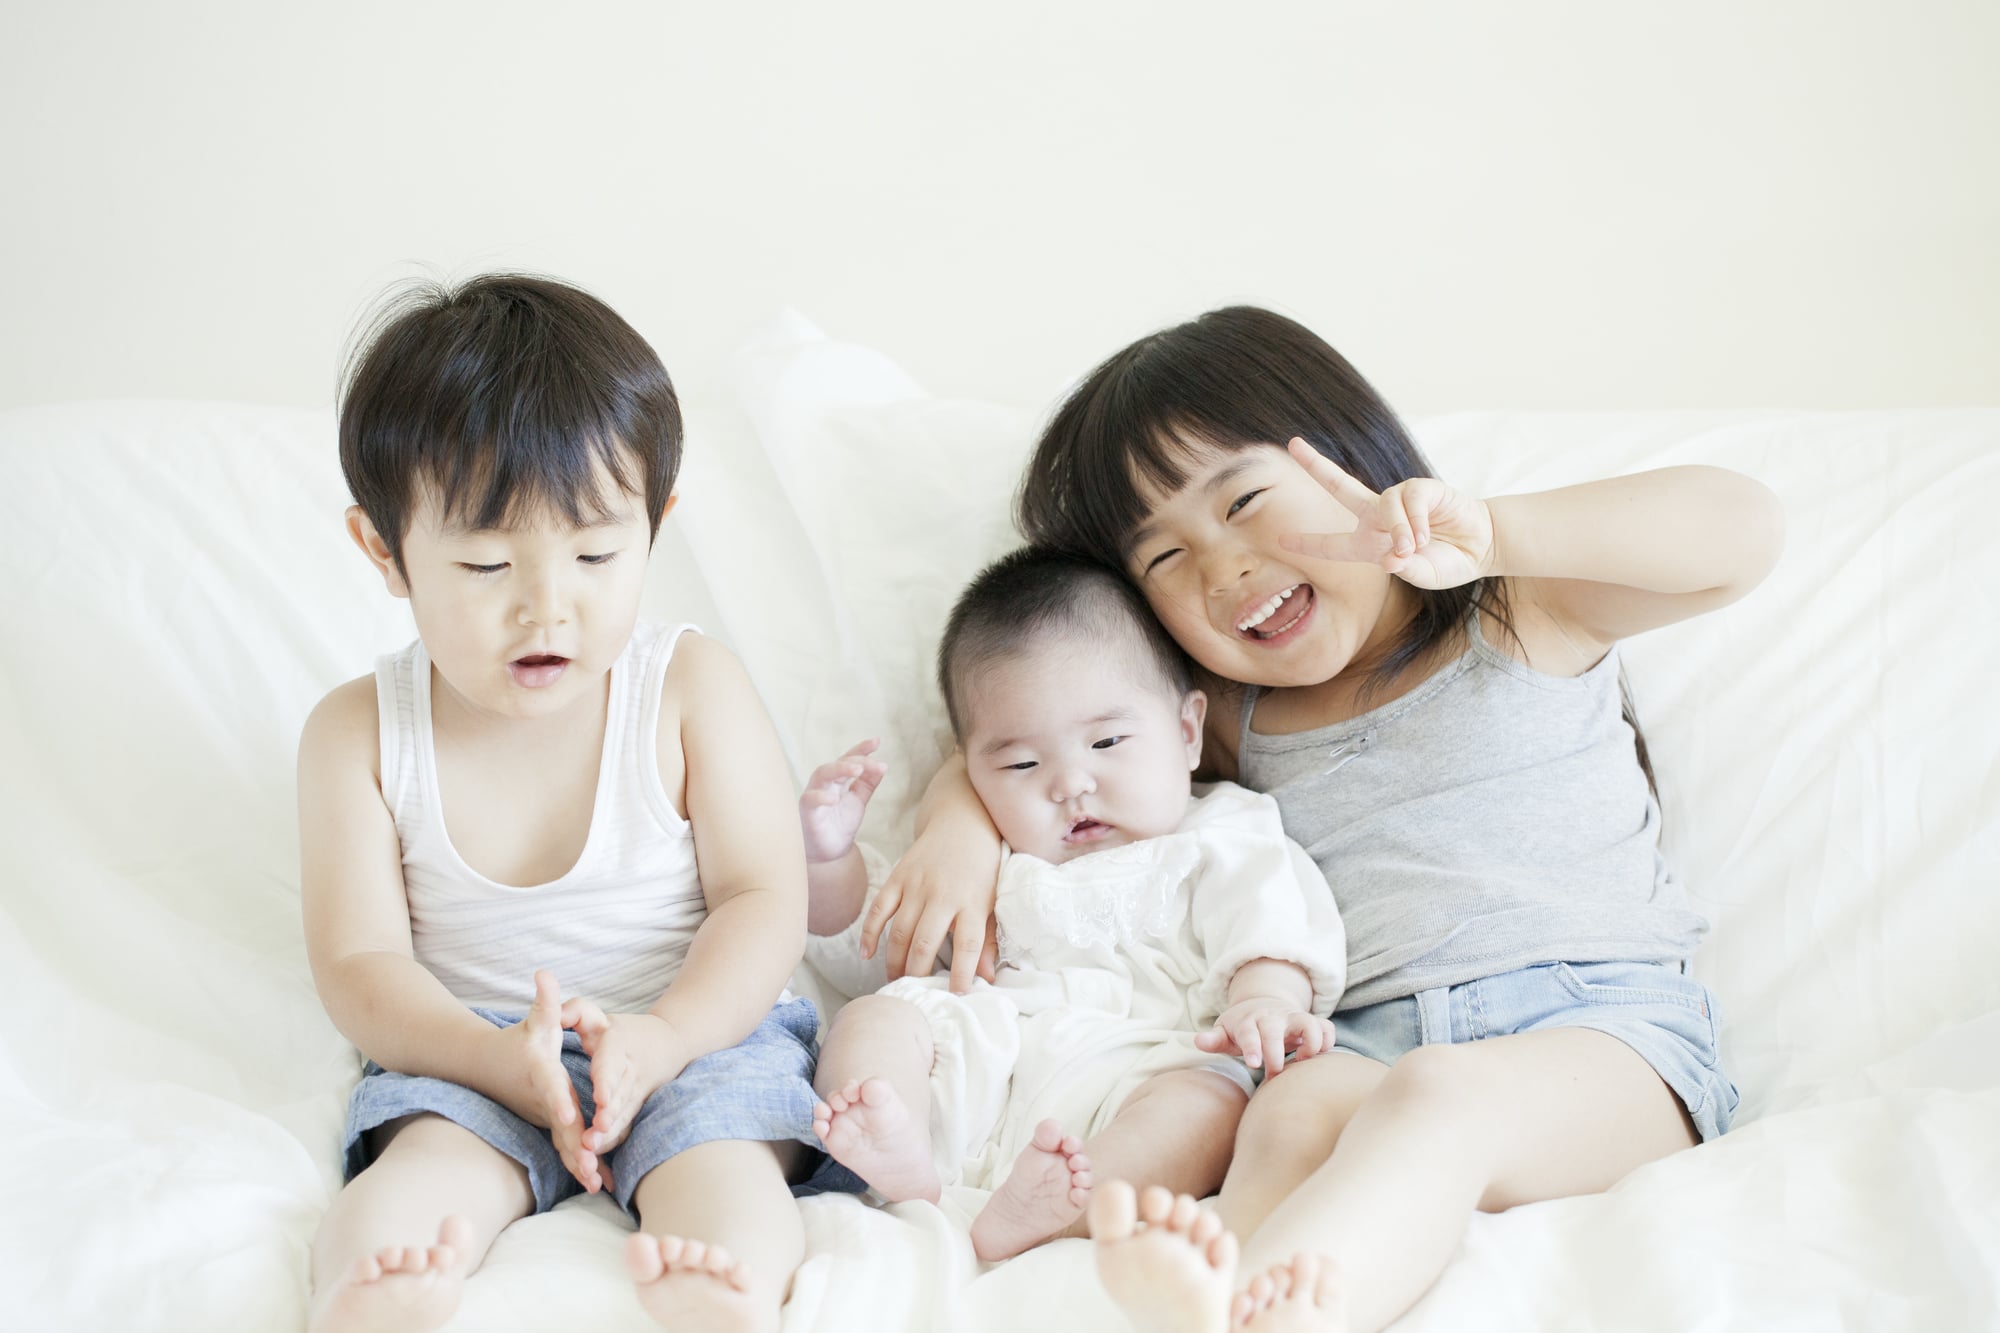 Молодые мамы япония. Японские дети js. Фото детей и мамочек Япония. Детская китайская порносайт. Фото детей Япония обучение.